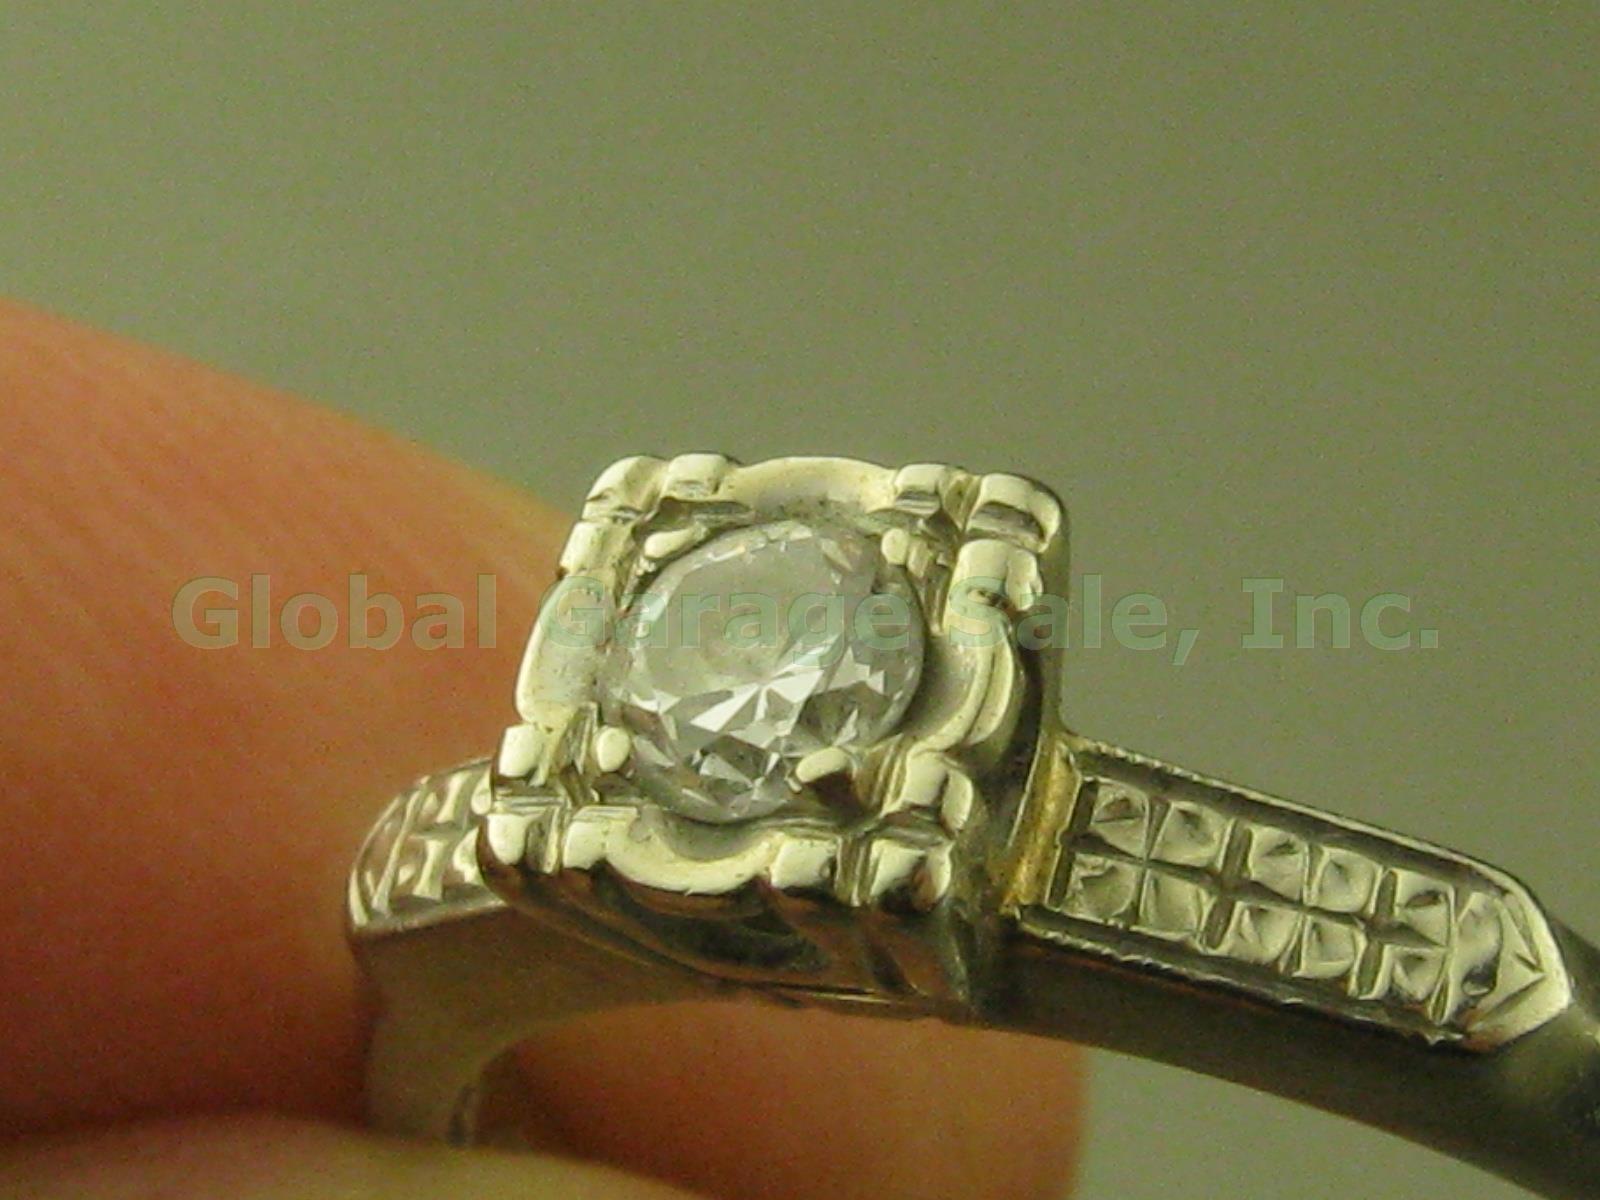 Vtg 14k White Gold Diamond Solitaire Engagement Ring Band W/Insert 4.25-4.5 2.9g 1